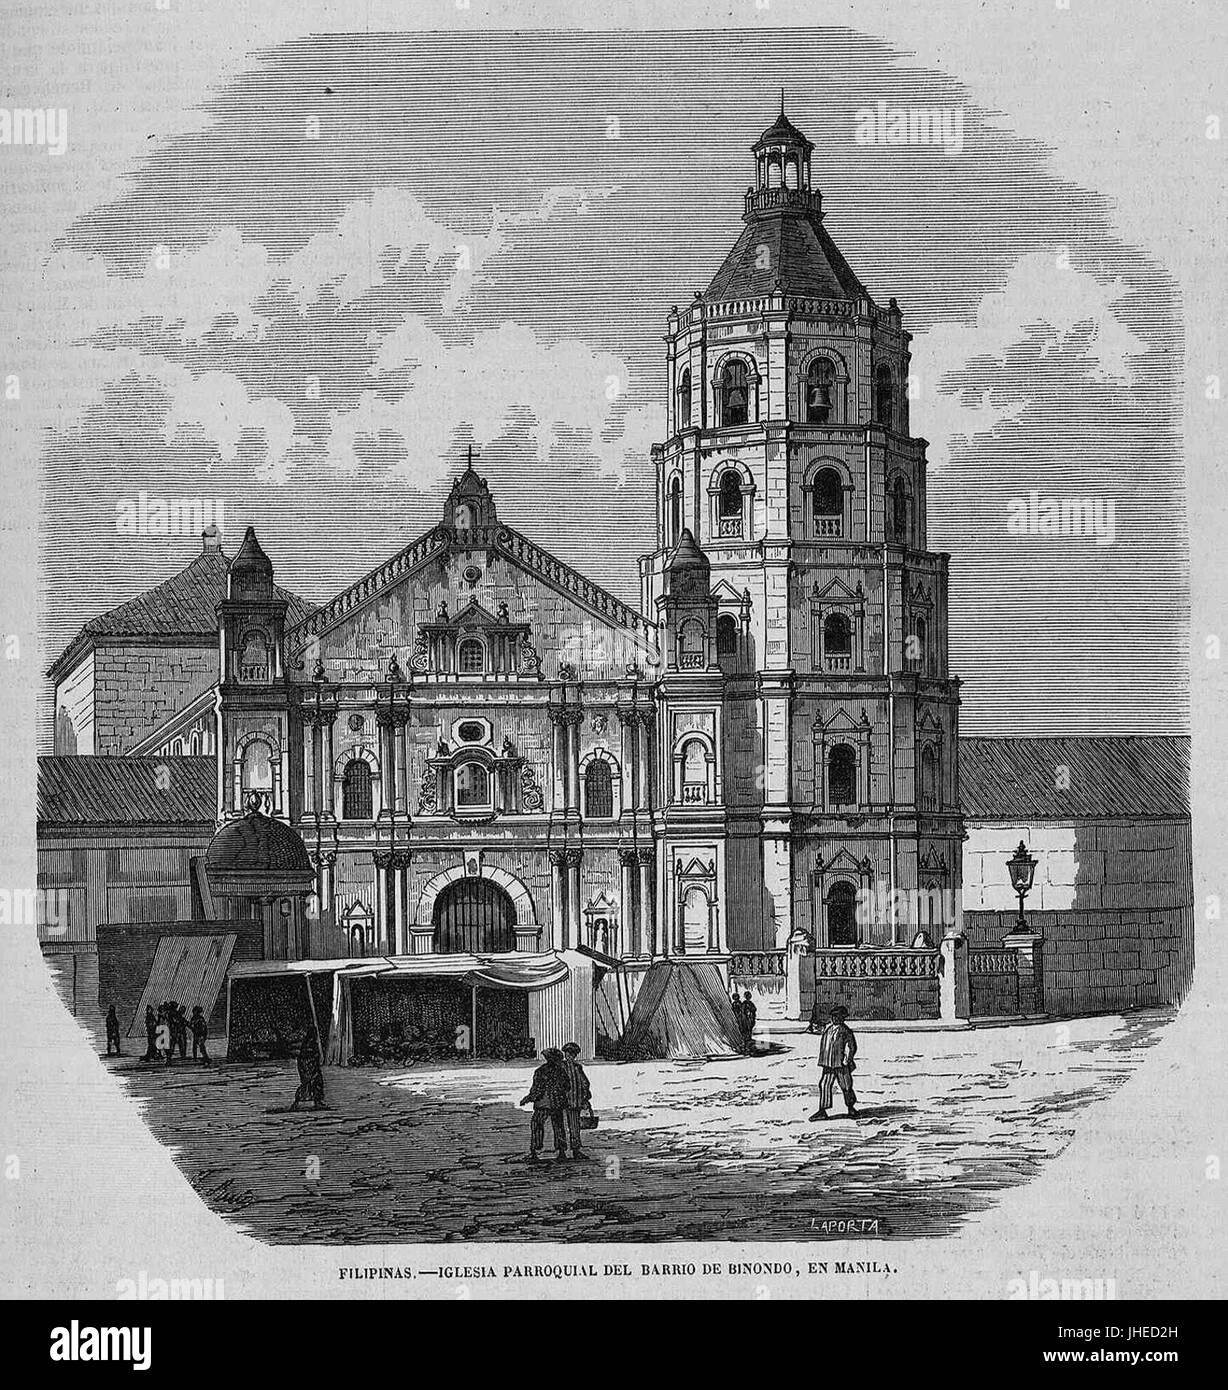 La Iglesia parroquial del barrio de Binondo, en Manila, de Ruiz Foto Stock